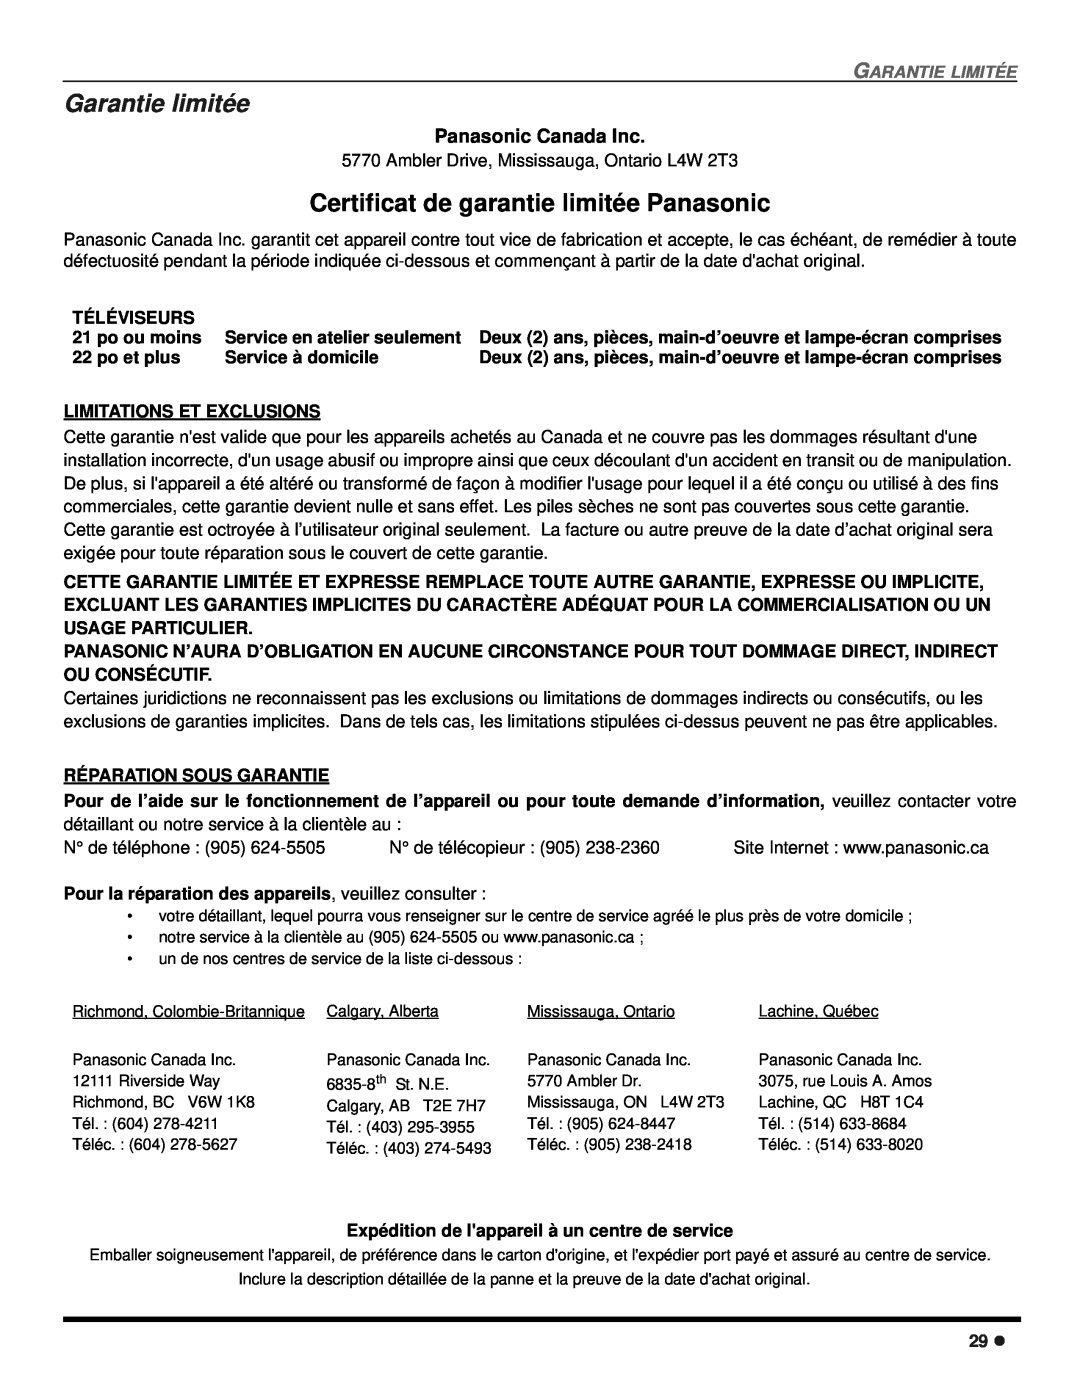 Panasonic CT 24SX12 Garantie limitée, Certificat de garantie limitée Panasonic, Panasonic Canada Inc, Garantie Limitée 